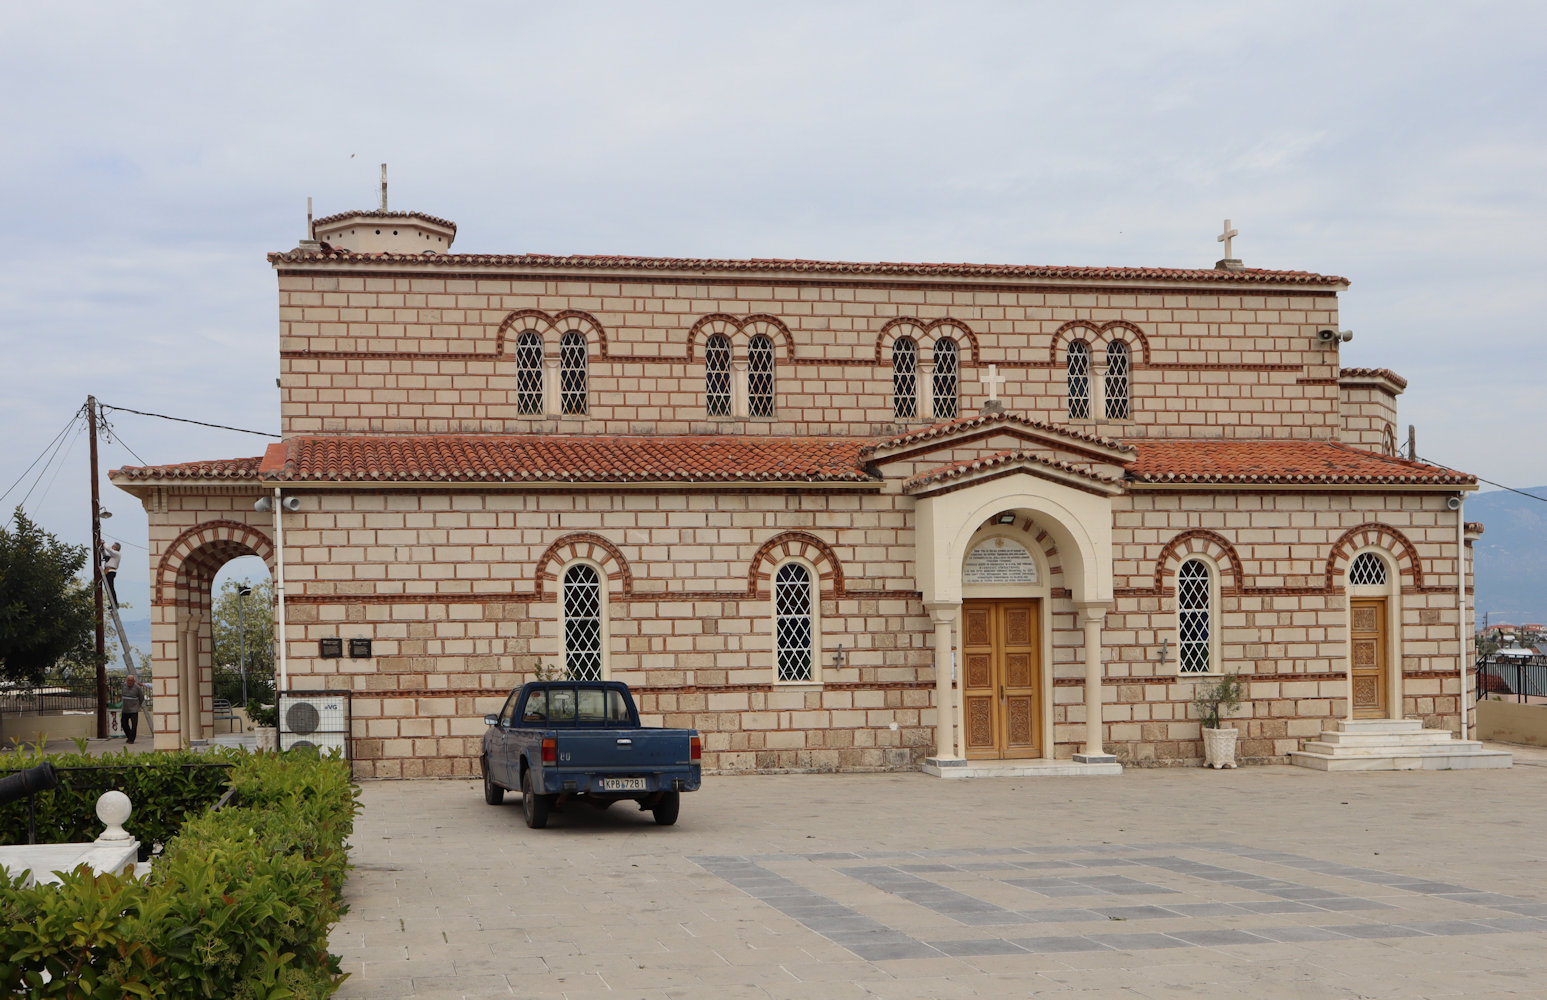 Die Pfarrkirche des heute Alt-Korinth genannten Ortes, der gößtenteils nach dem Erdbeben 1858 in die am Meer neu grgründete Stadt verlegt wurde, wo sich seitdem auch die Metropolitankirche befindet